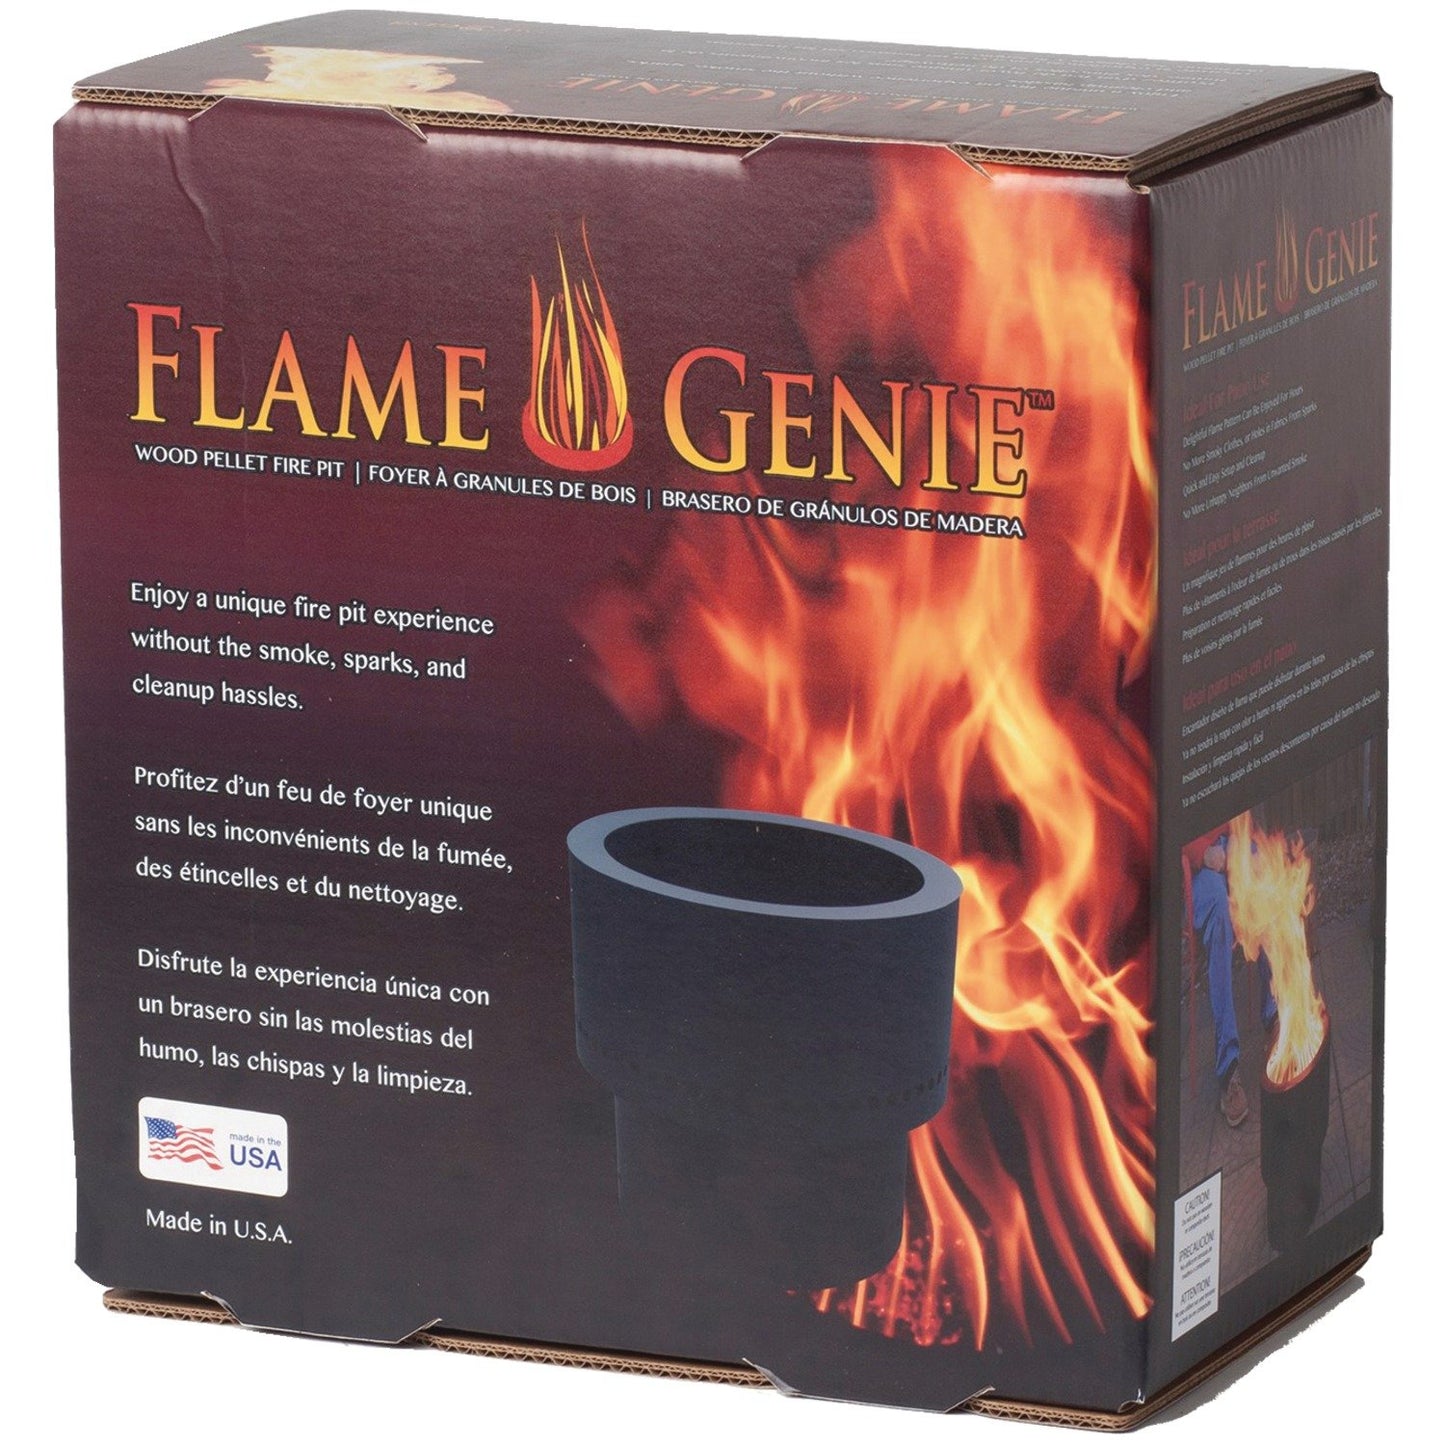 Flame Genie FG-16 Wood Pellet Fire Pit (Black)